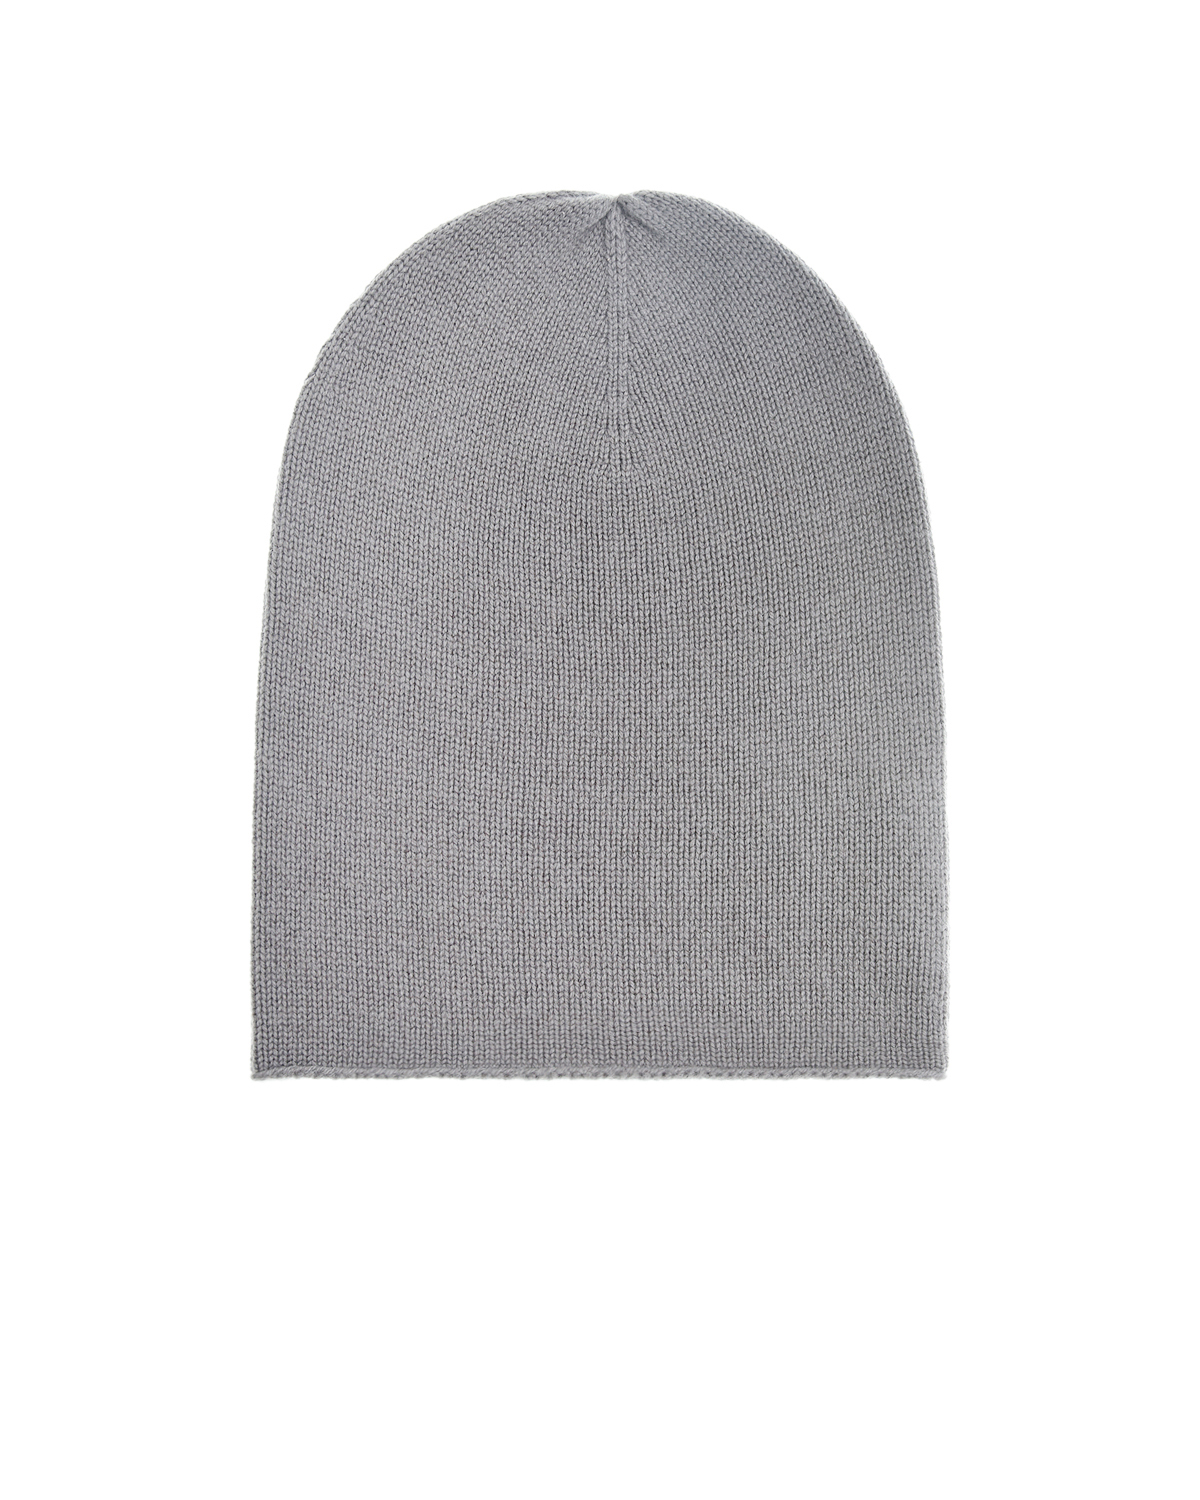 Серая шапка-бини из кашемира Allude, размер unica, цвет серый